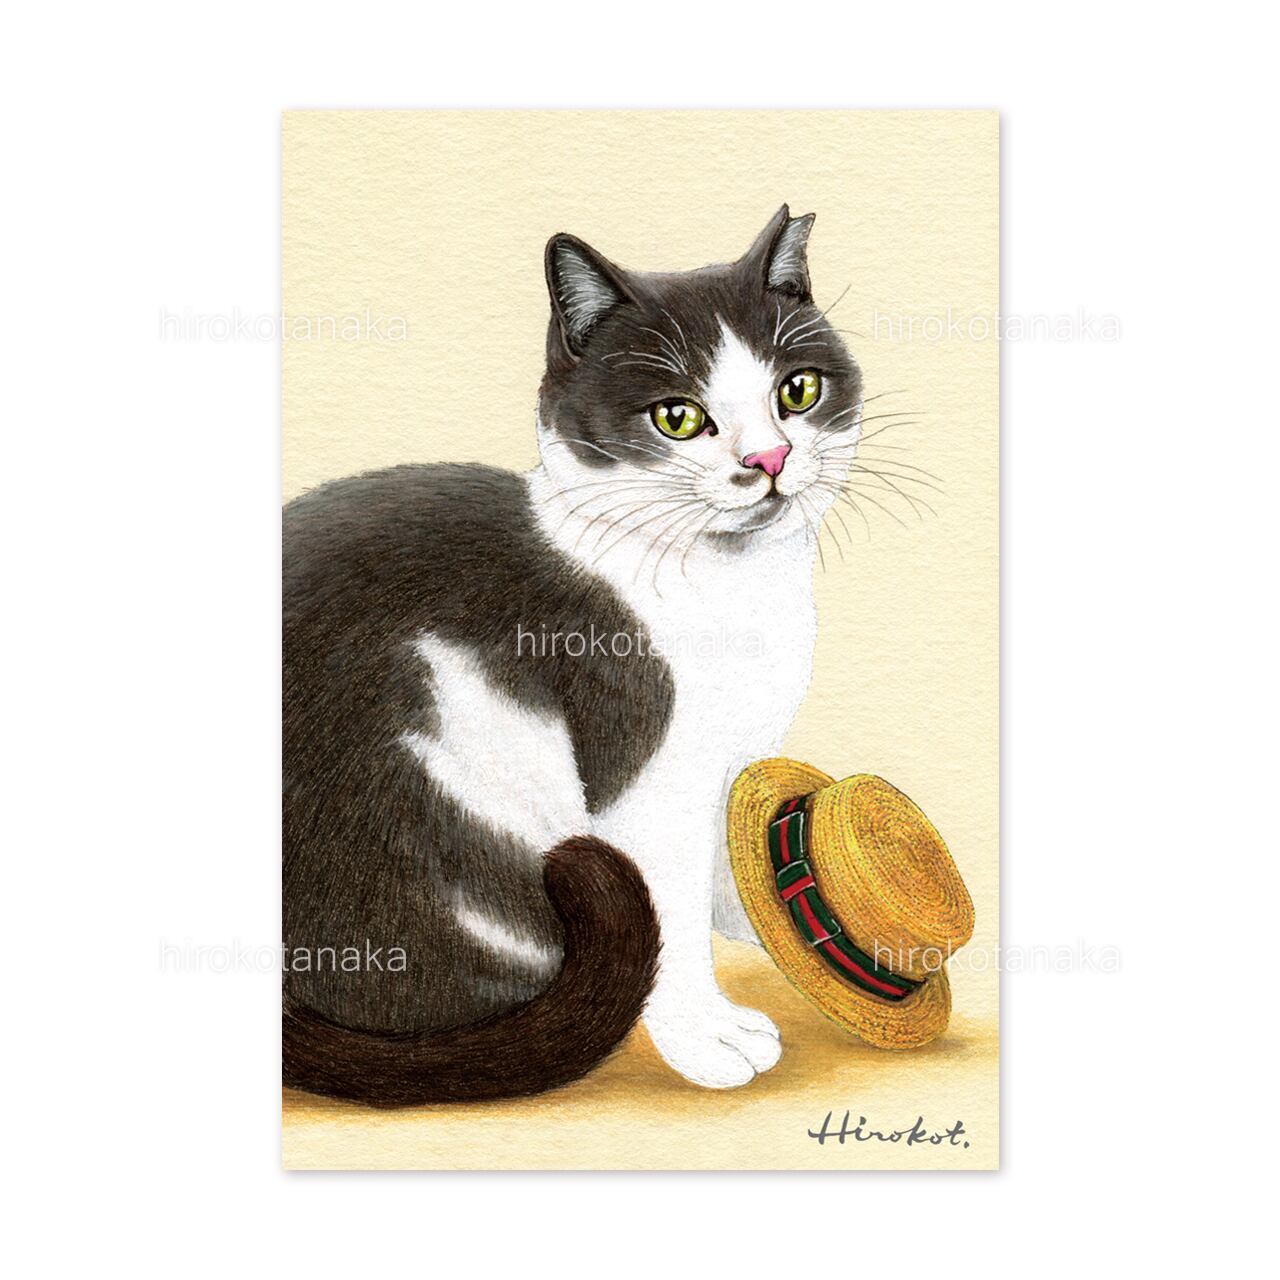 9.ねこと麦わら帽 ポストカード / Cat and Straw Hat Postcard